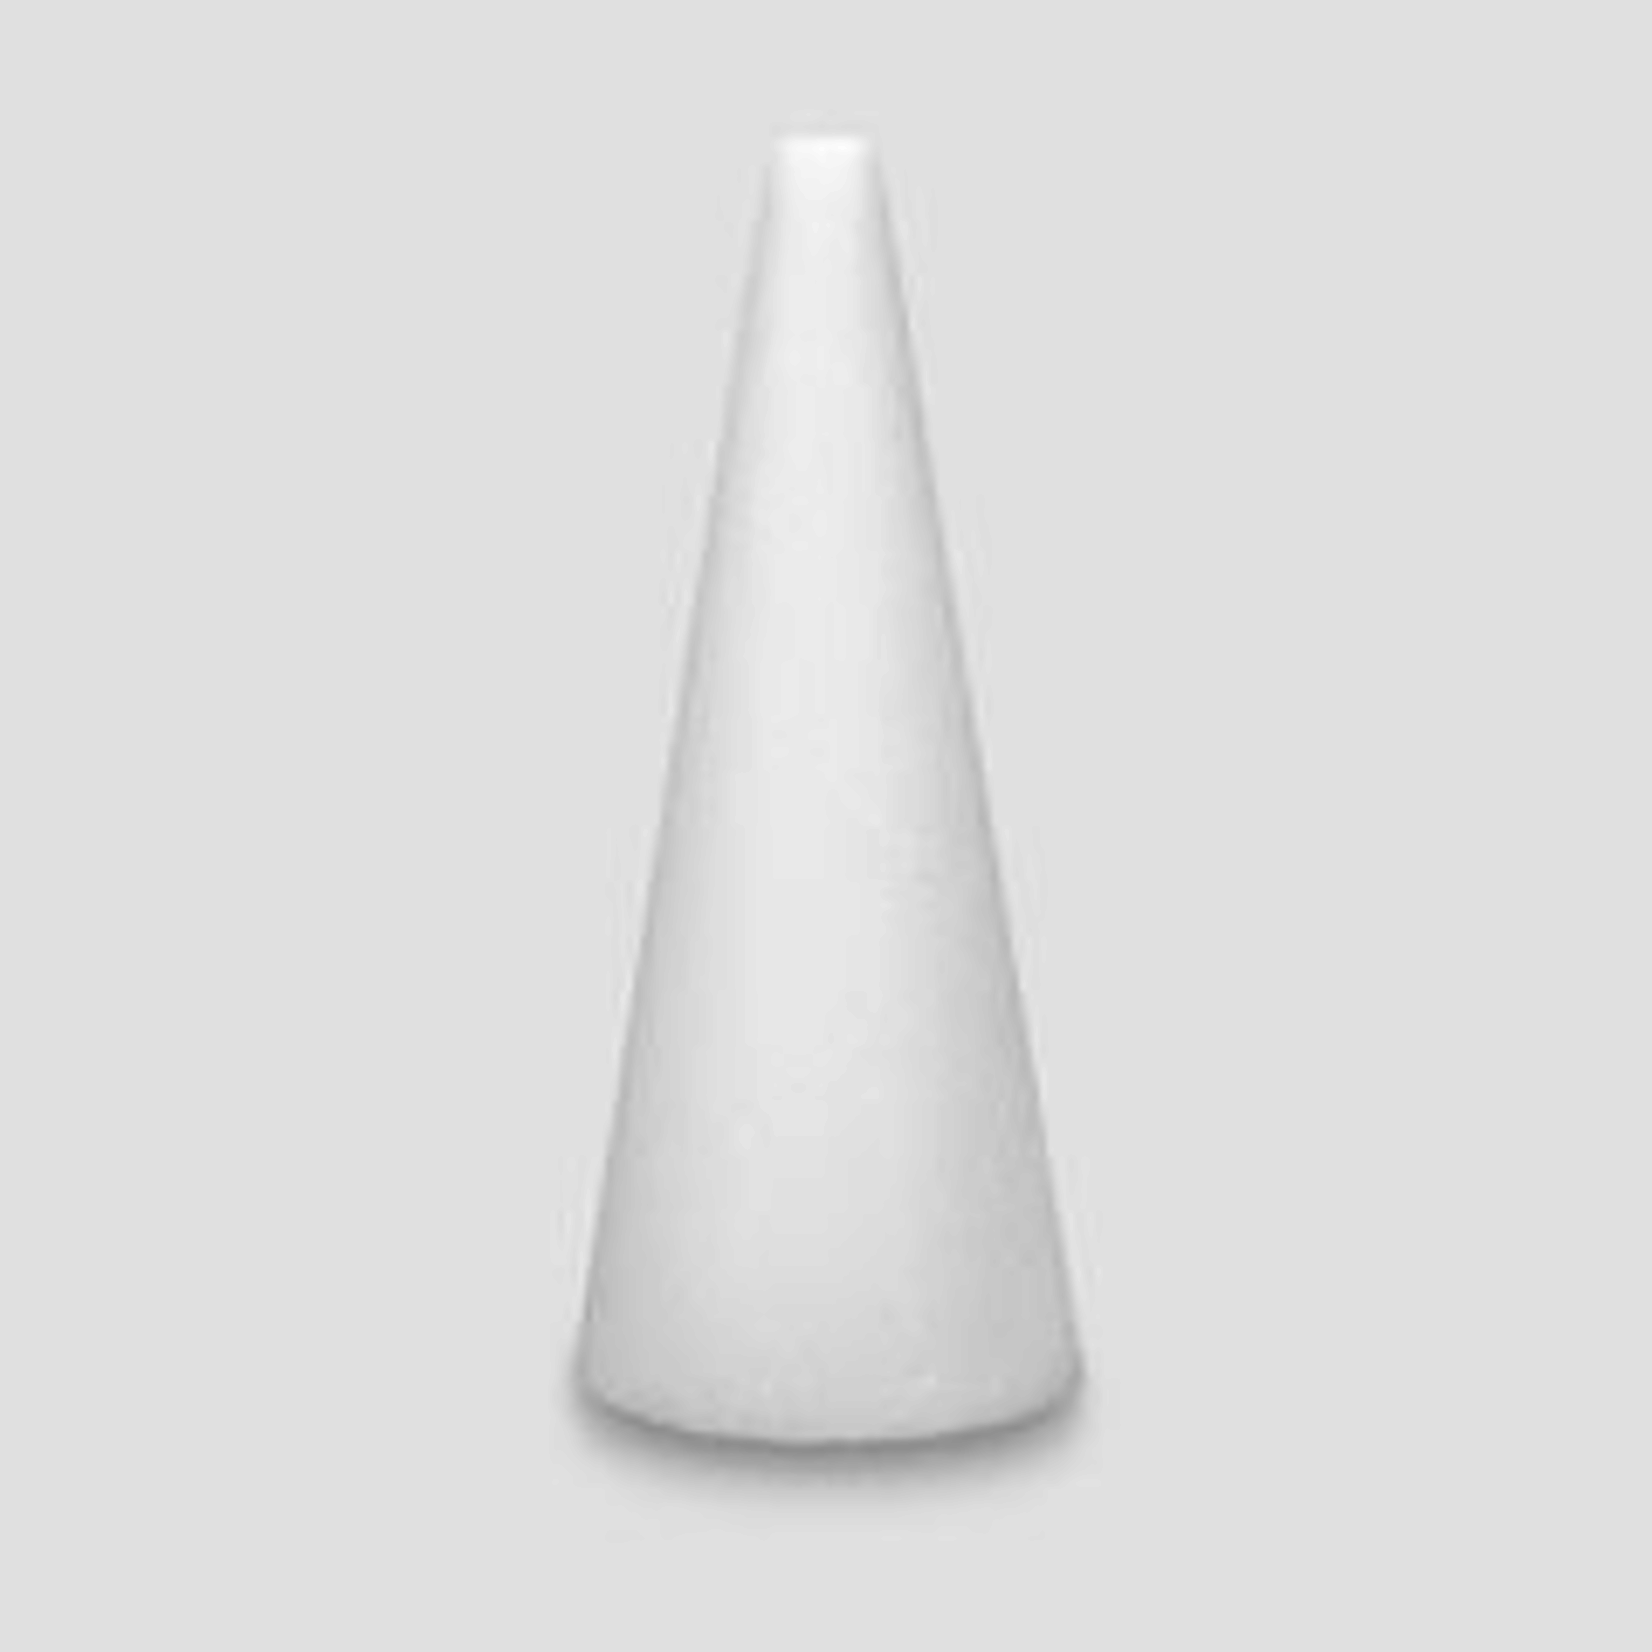 8x3""  White STYROFOAM Cone